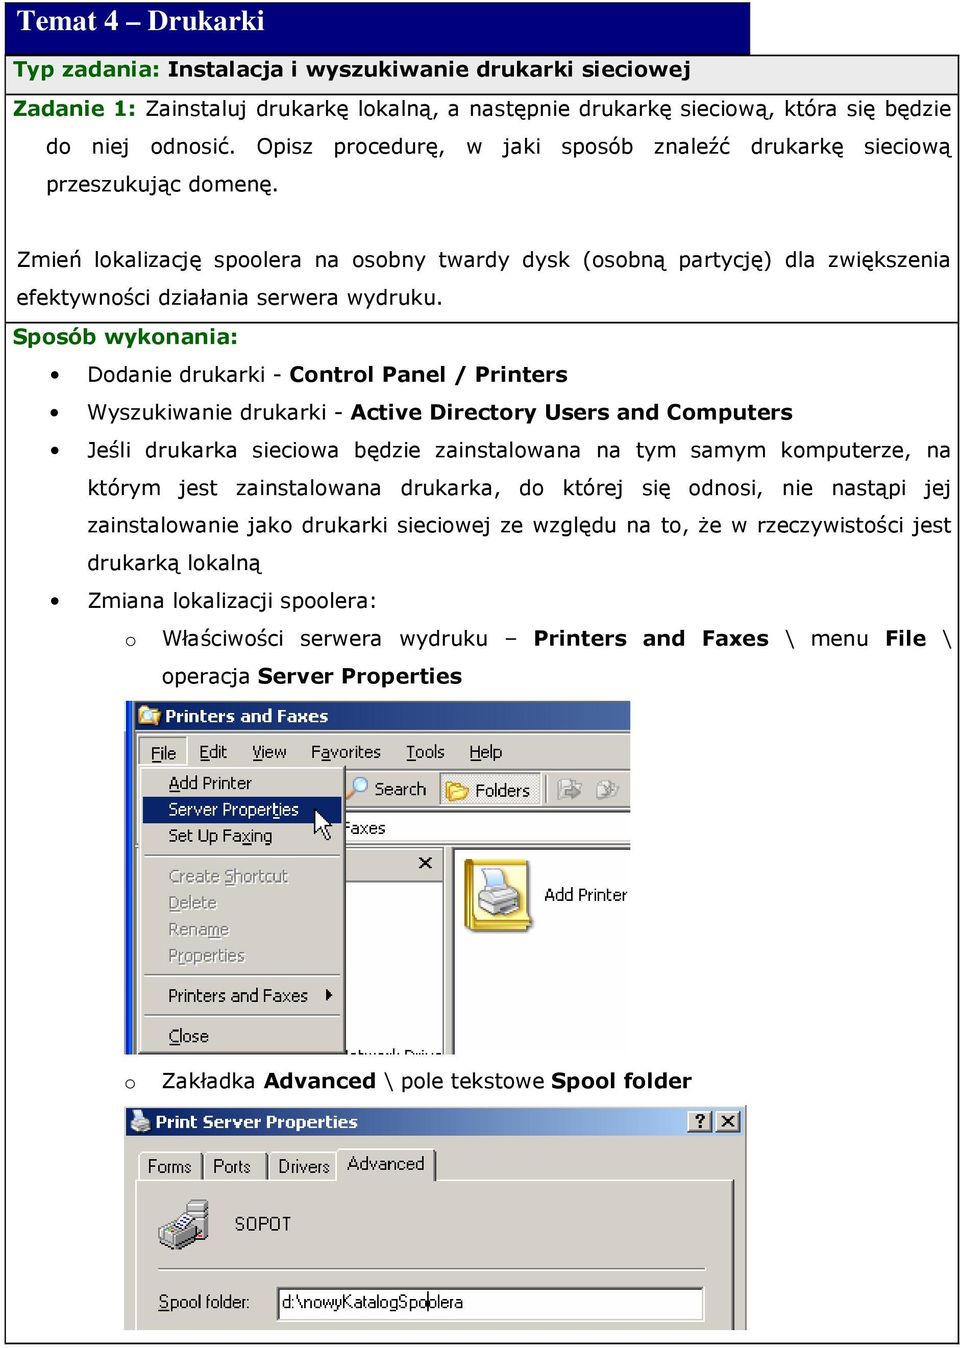 Dodanie drukarki - Control Panel / Printers Wyszukiwanie drukarki - Active Directory Users and Computers Jeśli drukarka sieciowa będzie zainstalowana na tym samym komputerze, na którym jest